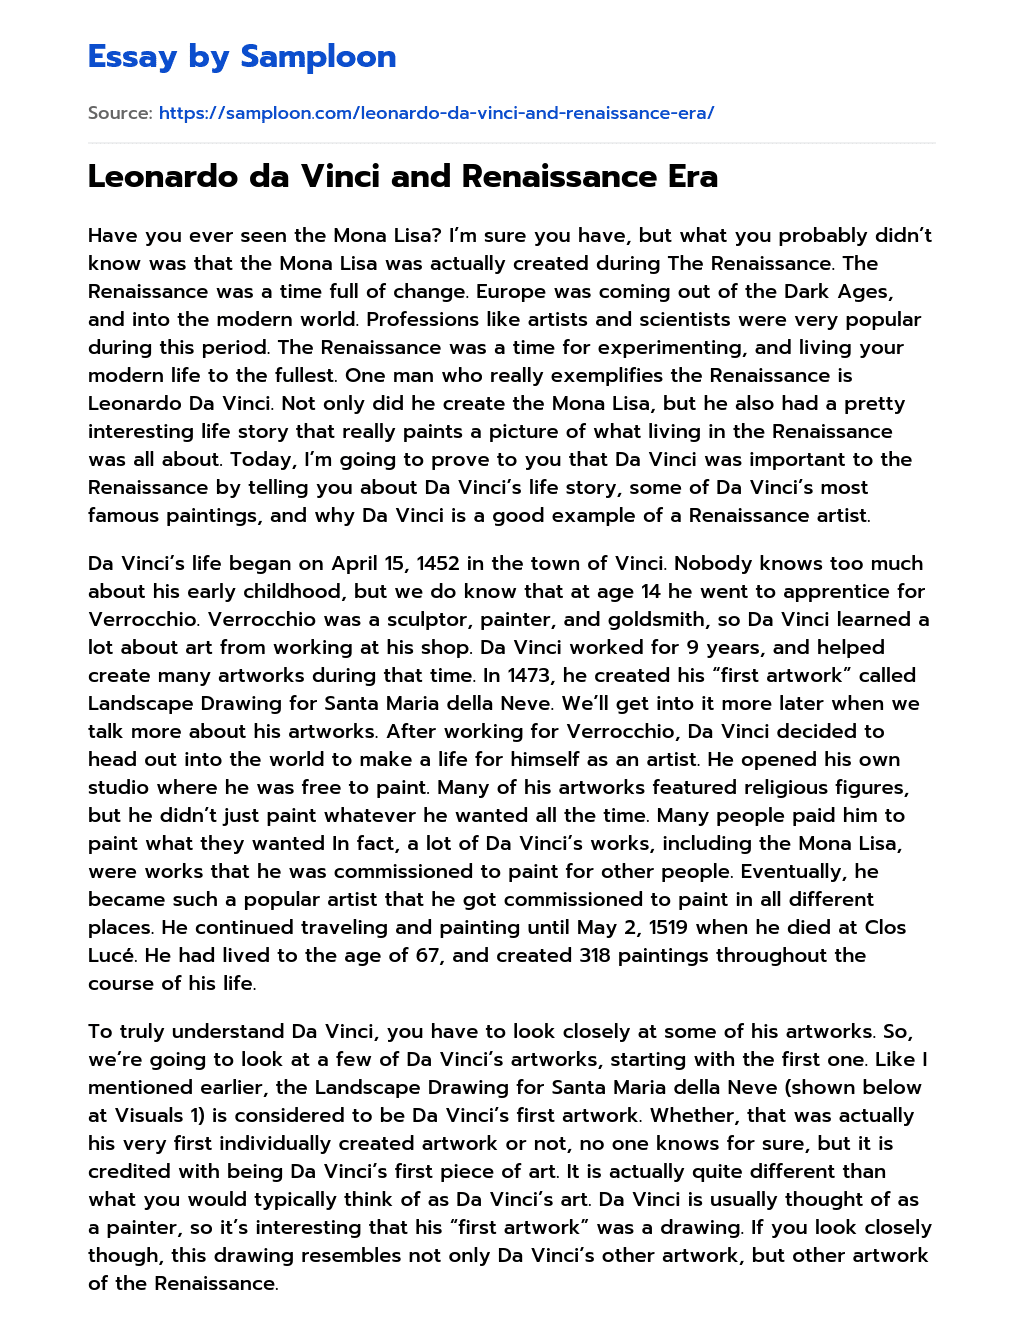 Leonardo da Vinci and Renaissance Era essay